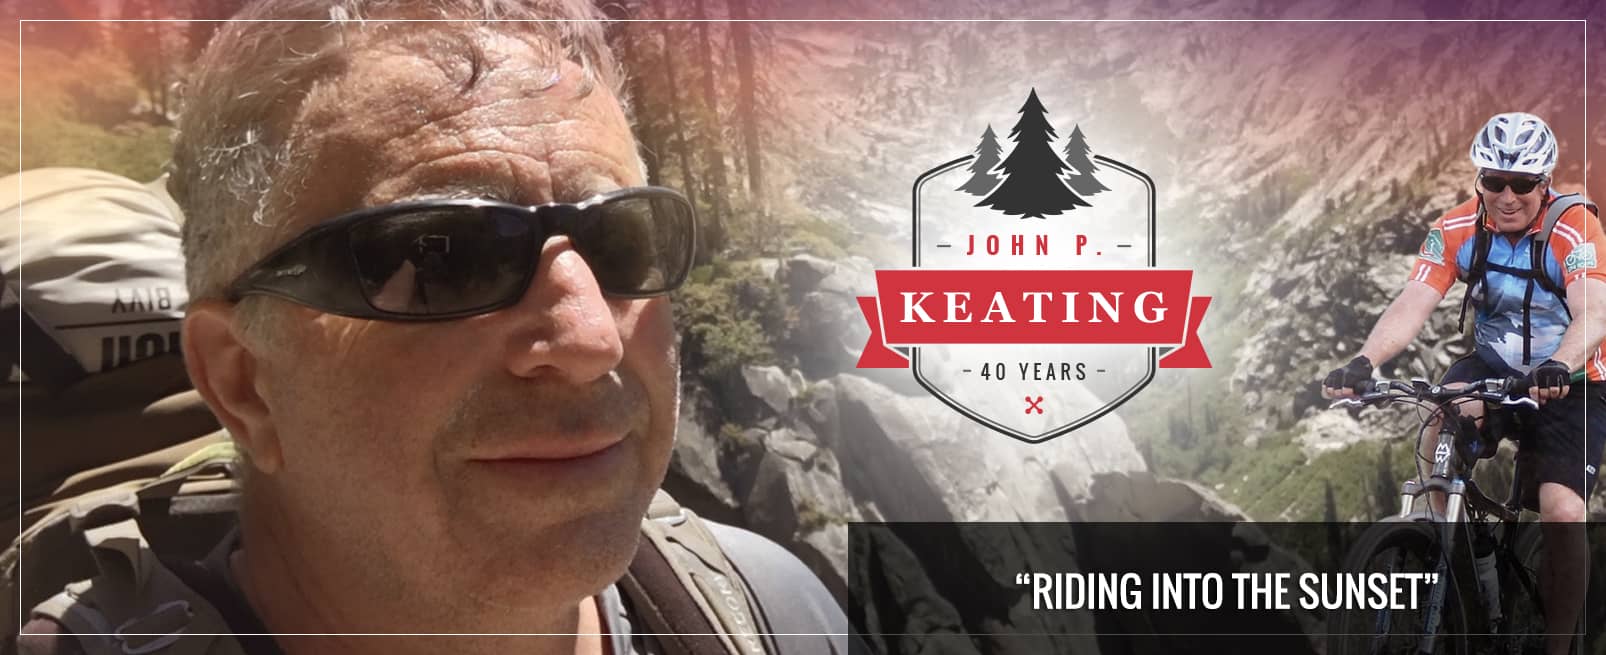 John P. Keating